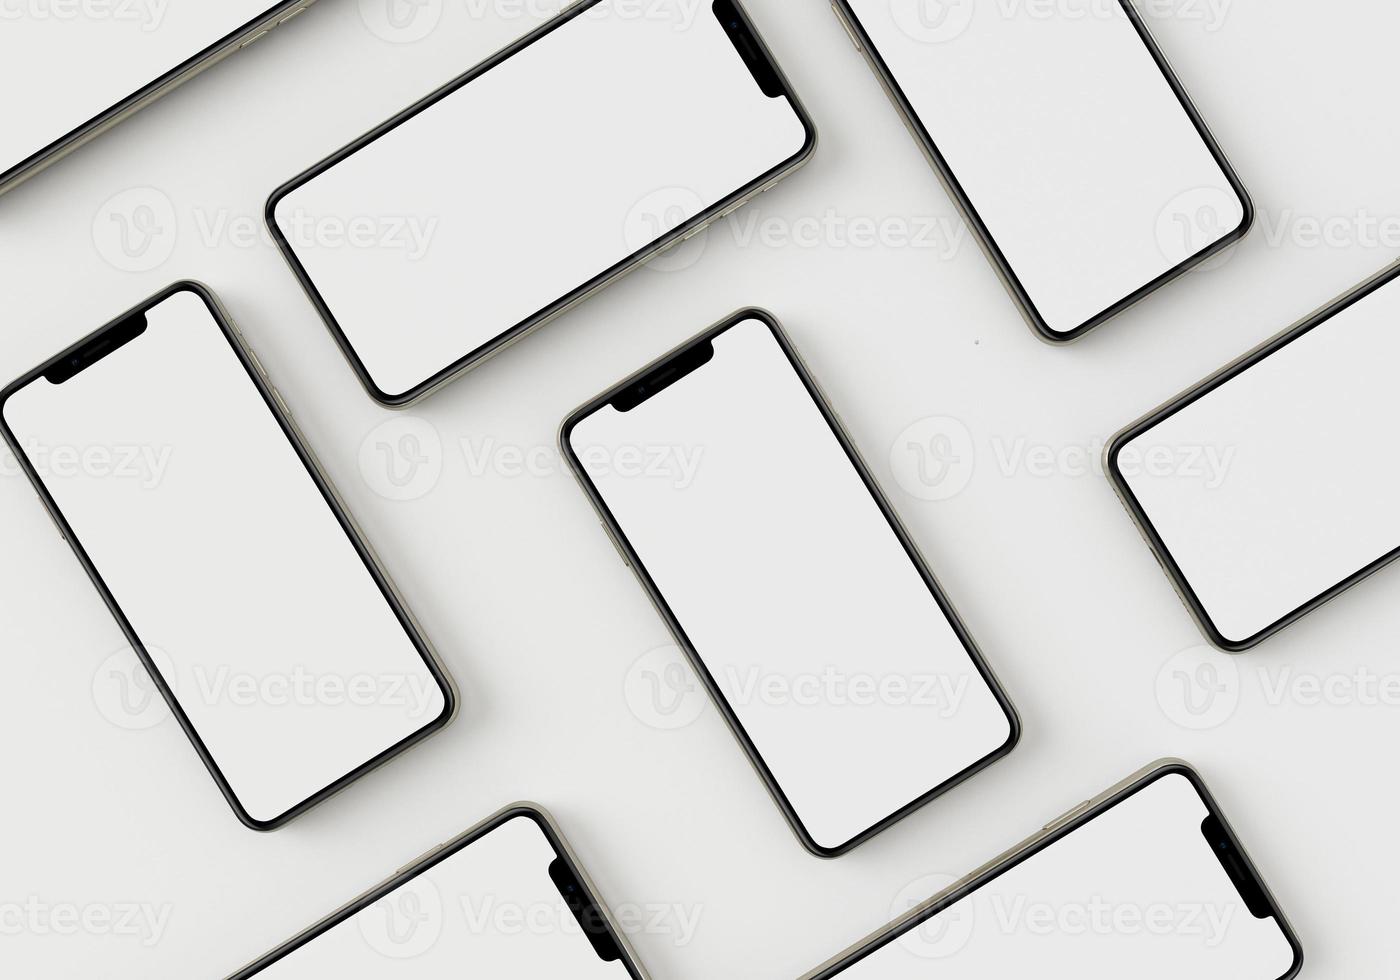 Rendu 3d illustration main tenant le smartphone blanc avec plein écran et design moderne sans cadre - isolé sur fond blanc photo